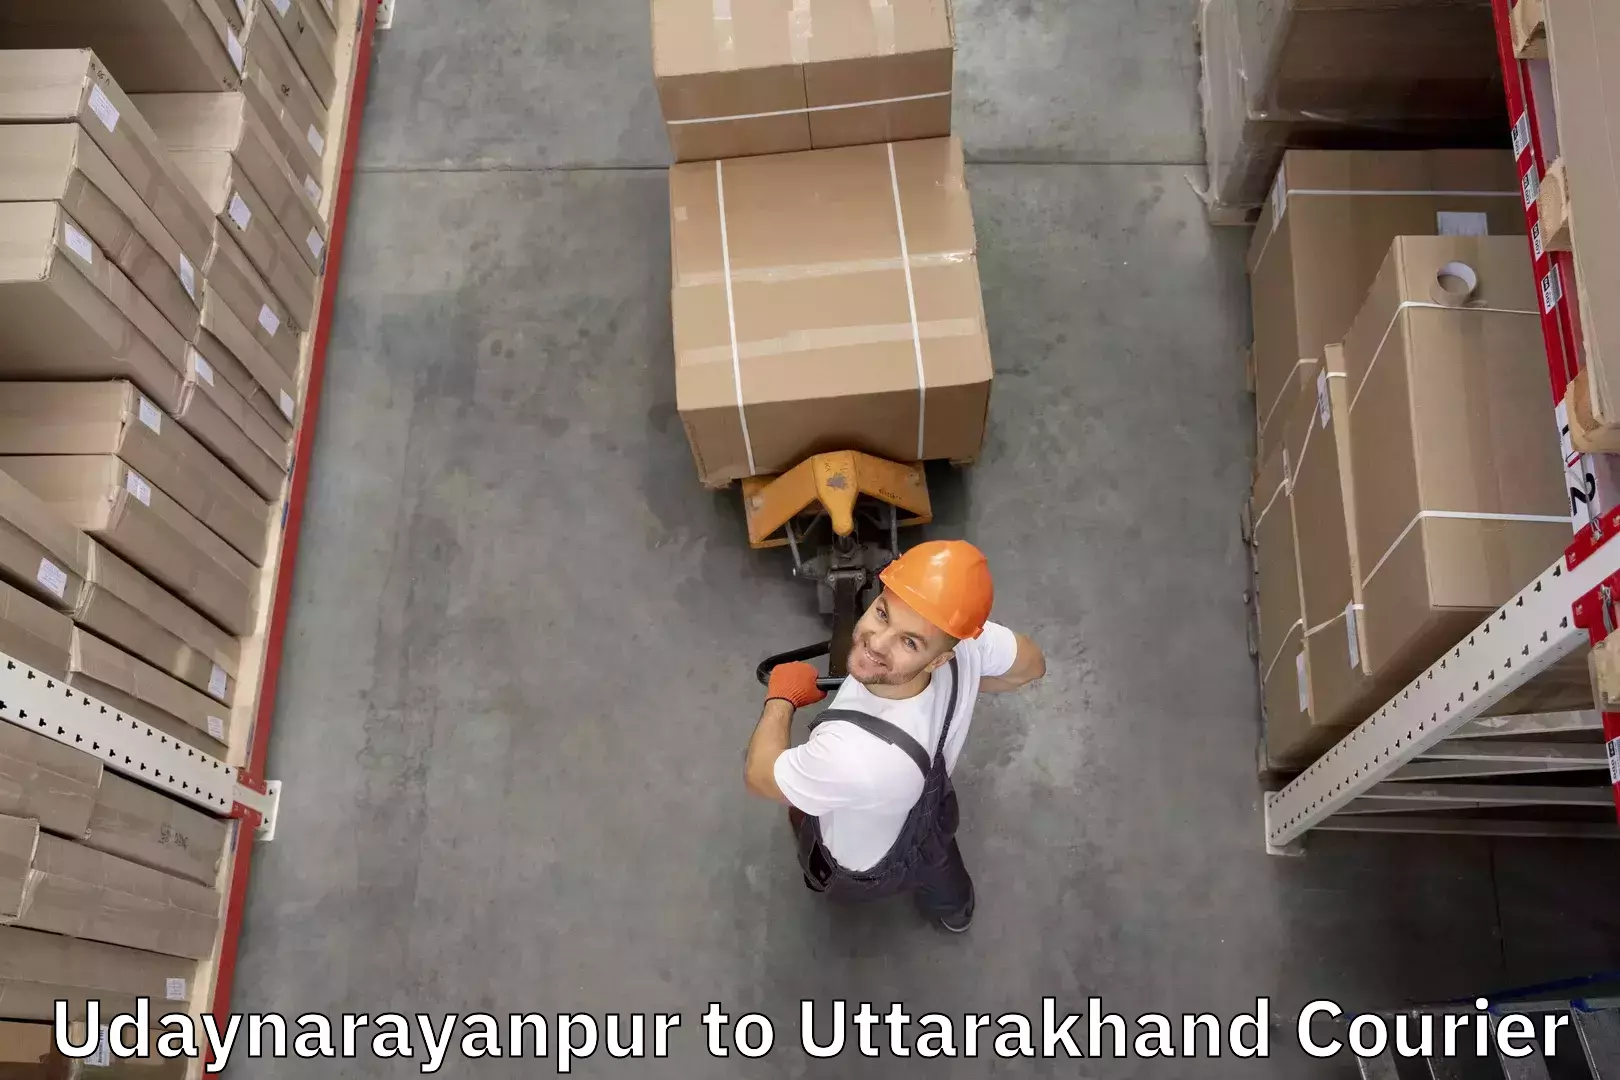 Baggage shipping quotes Udaynarayanpur to Doiwala